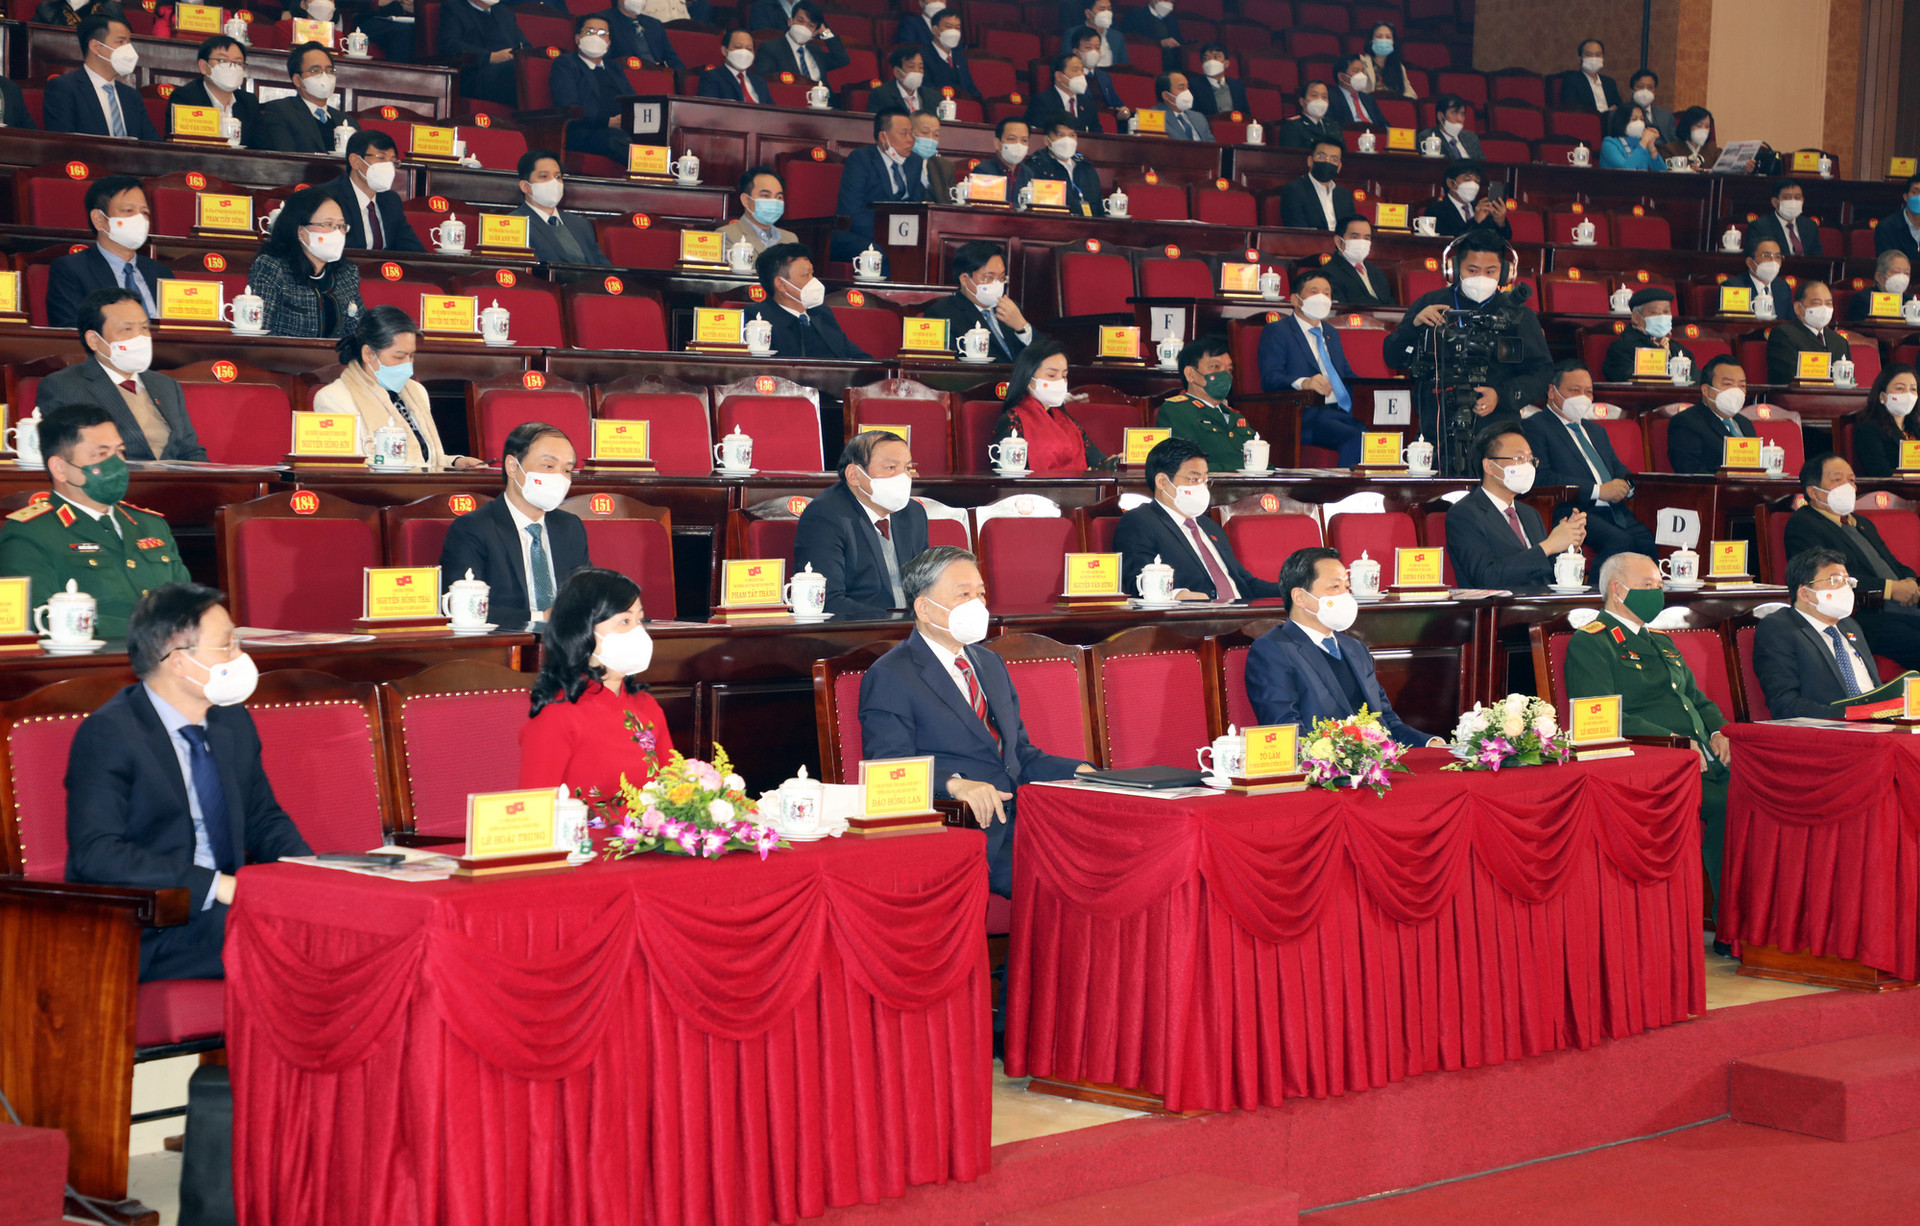 Bắc Ninh kỷ niệm 190 năm thành lập, 25 năm tái lập tỉnh và hân hoan đón nhận Huân chương Lao động hạng Nhất - Ảnh 1.